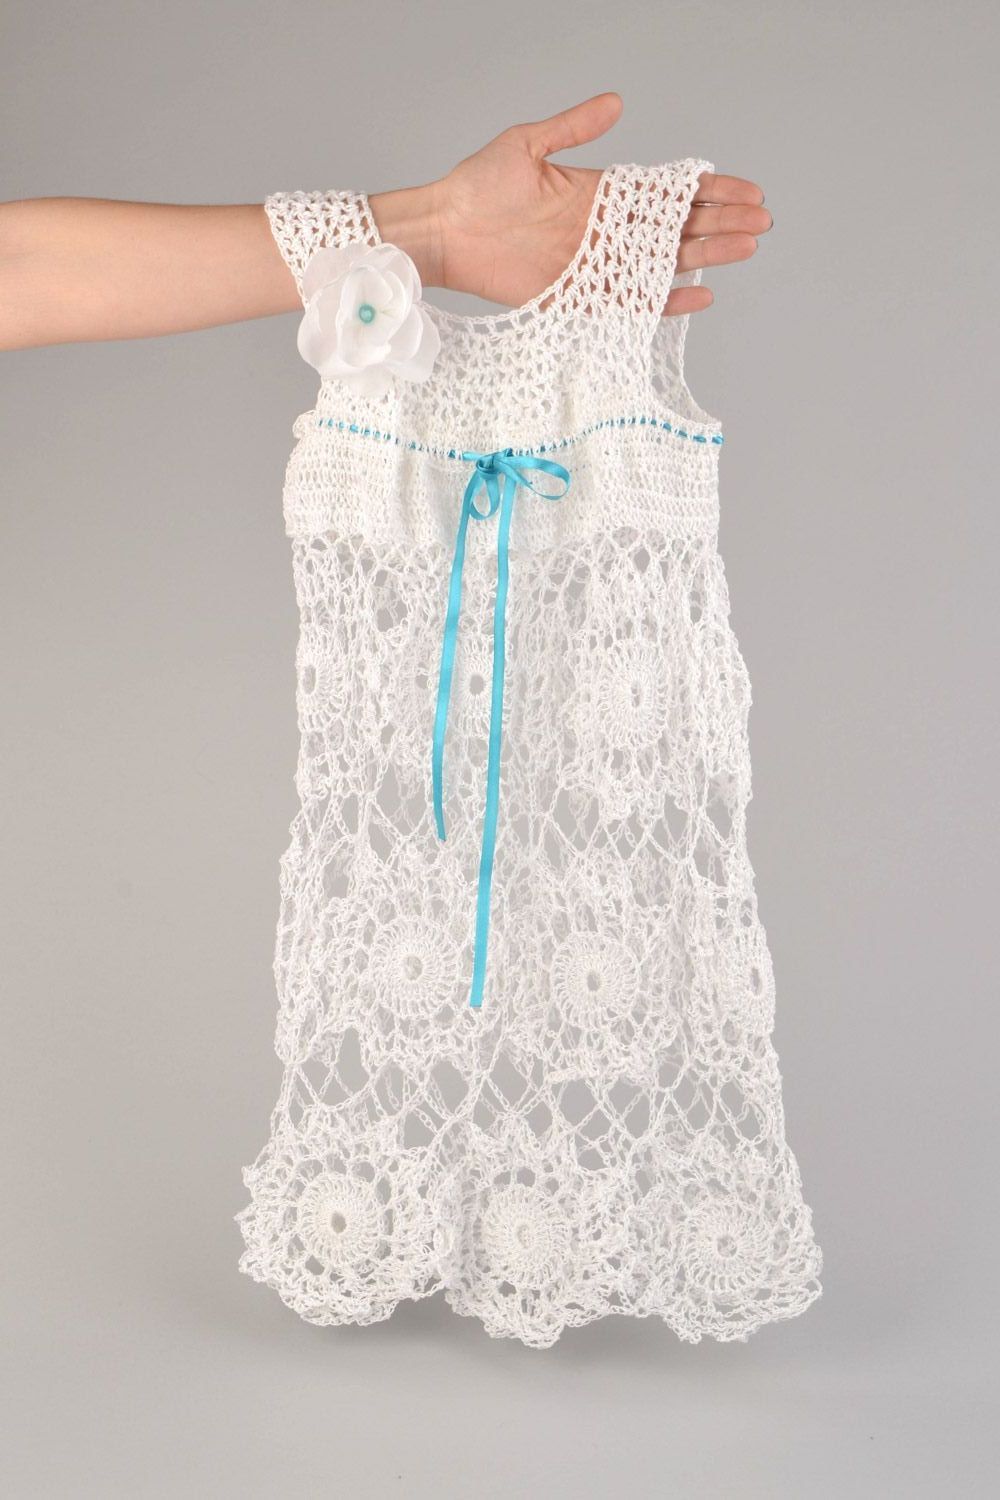 Платье вязаное крючком из акрила детское белое нарядное ажурное ручной работы фото 1